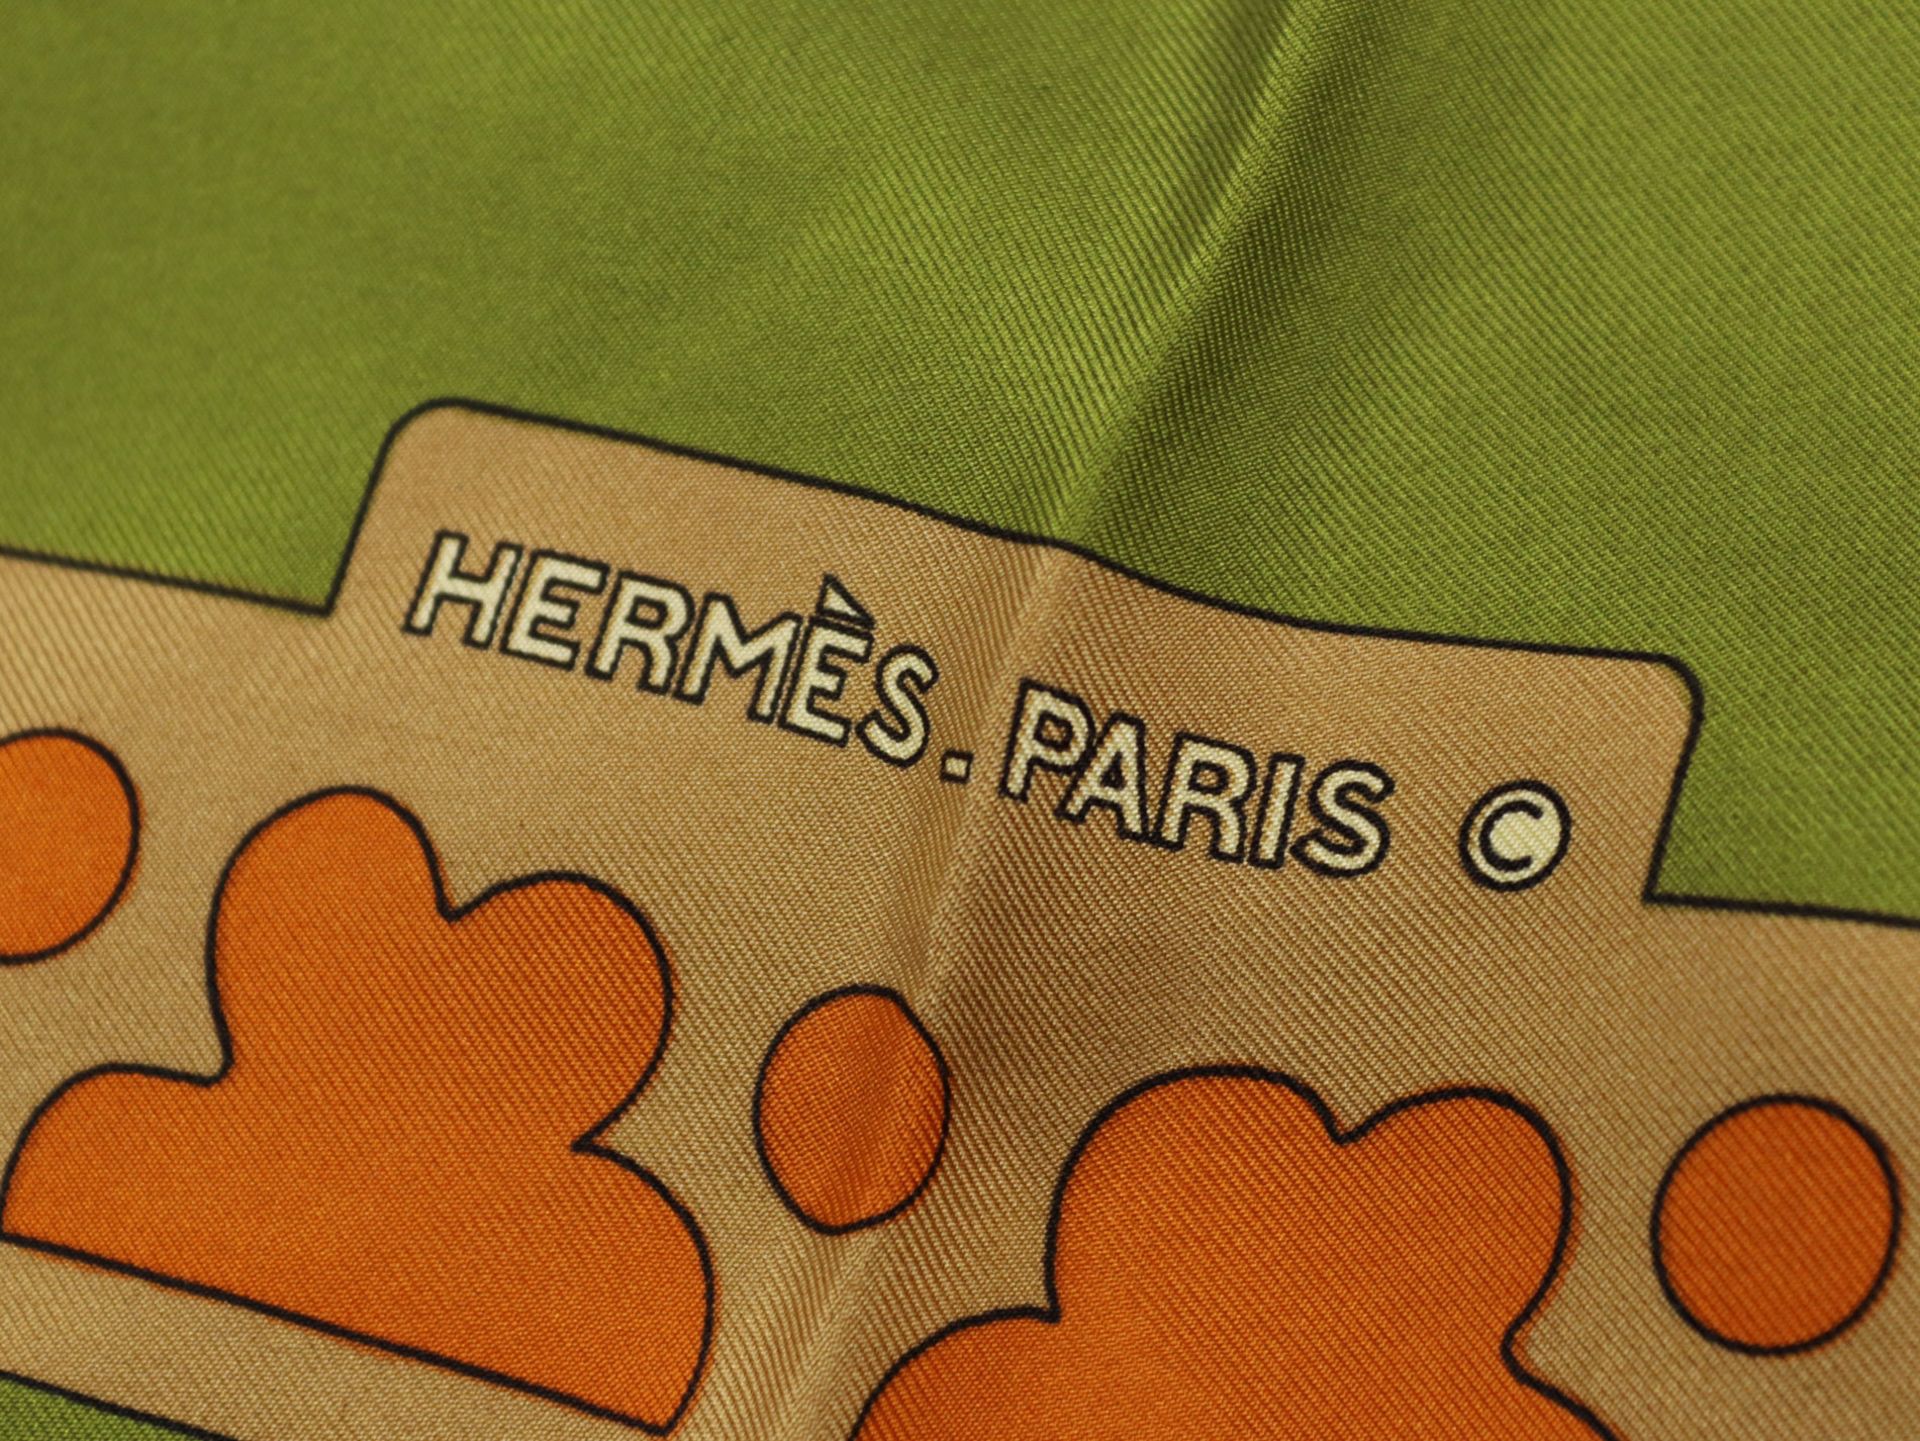 Hermès - Carré - Image 3 of 4